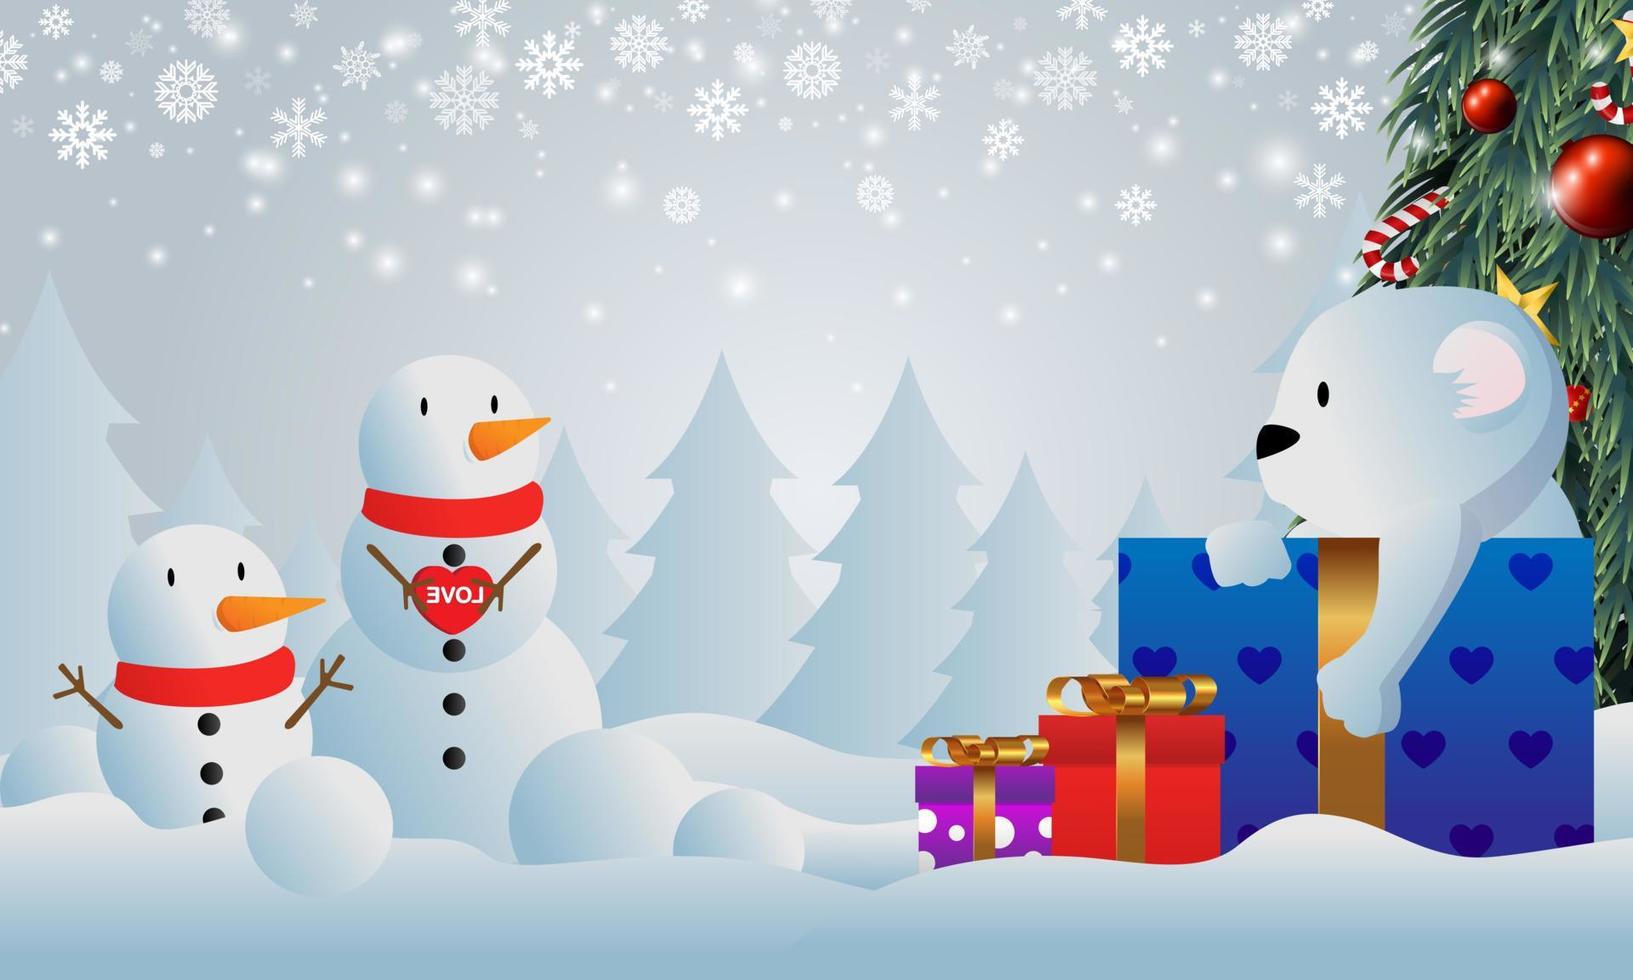 Geschenke unter dem Weihnachtsbaum. Weihnachtsgeschenk im Schnee. verschiedene Geschenke wie Teddybären, Geschenkboxen und Bonbons. vektor